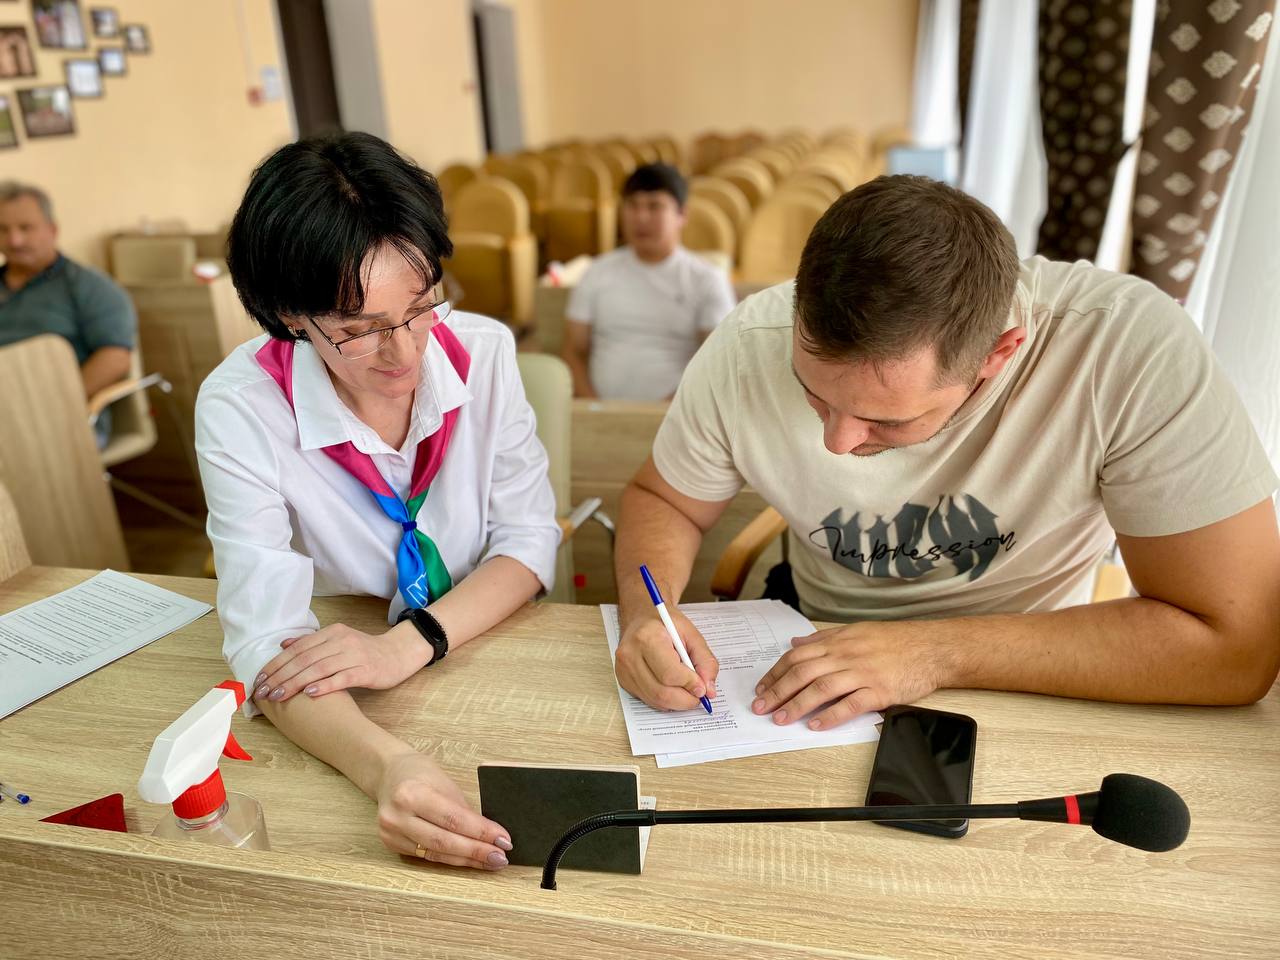 Выездная консультация ГБУ КК «Многофункциональный миграционный центр» в рамках выполнения государственного задания для иностранных граждан на территории Краснодарского края.